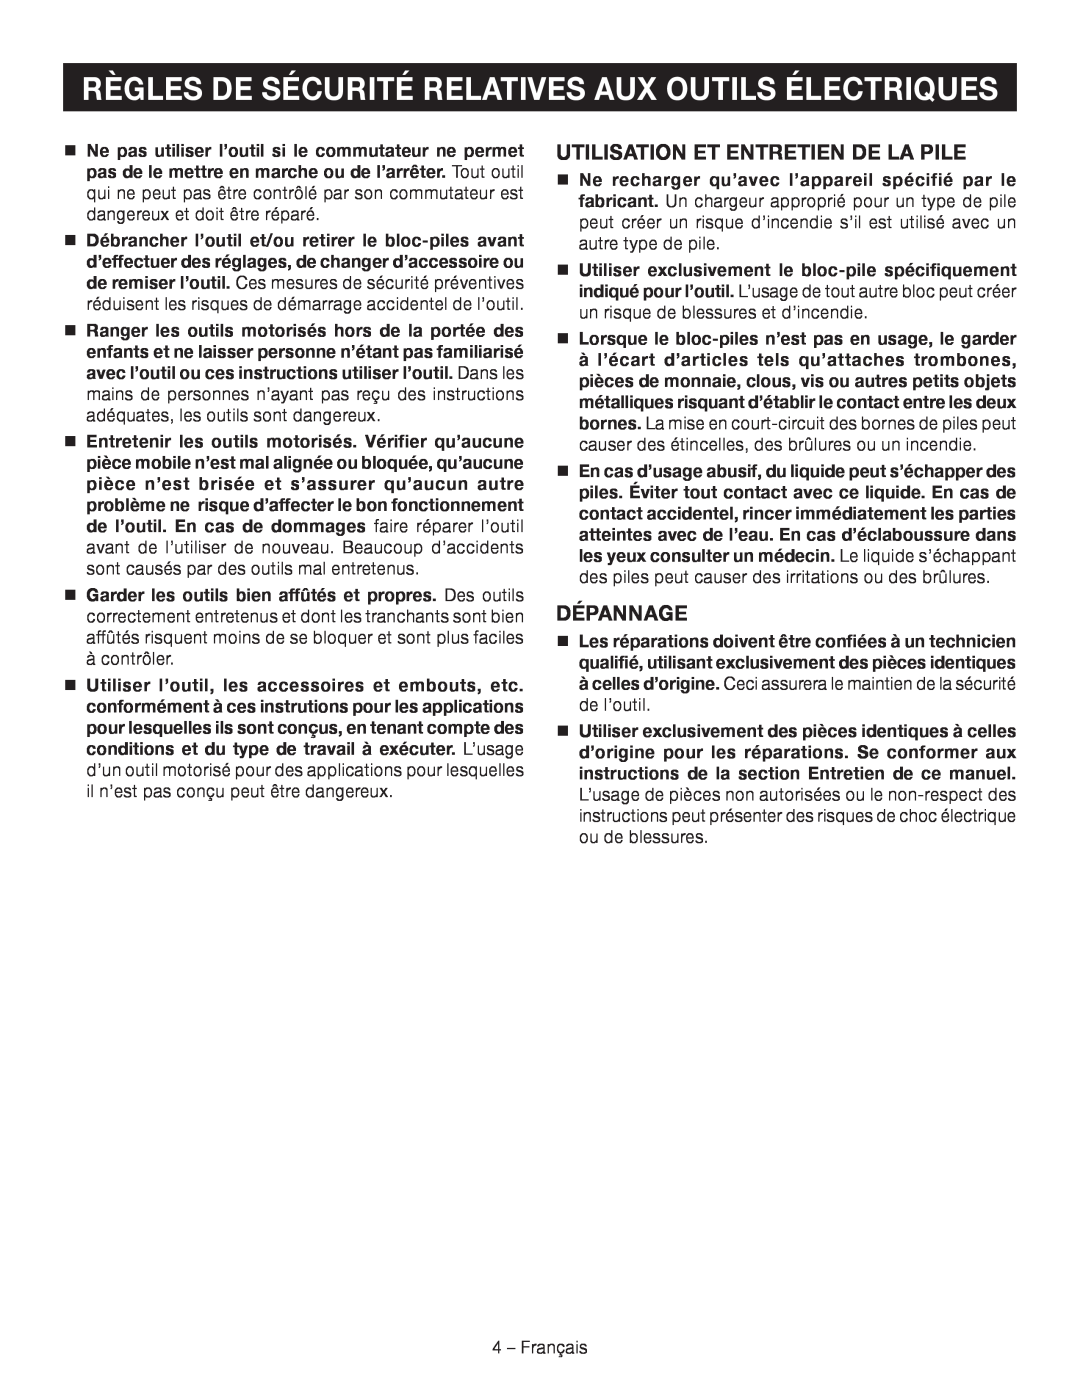 Ryobi P514 manuel dutilisation Utilisation Et Entretien De La Pile, Dépannage, 4 – Français 